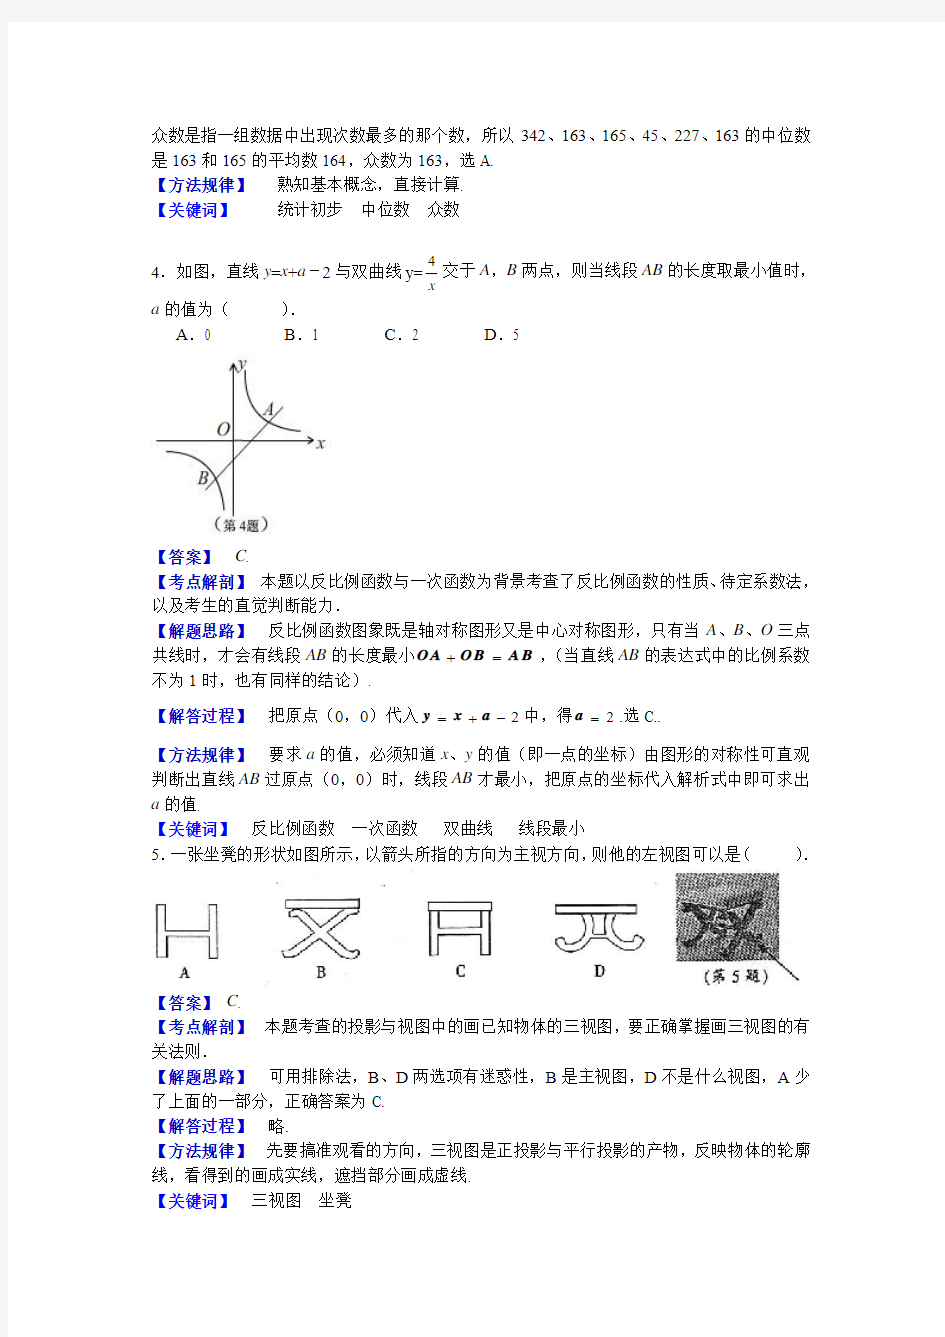 2013江西中考数学试题(解析版)